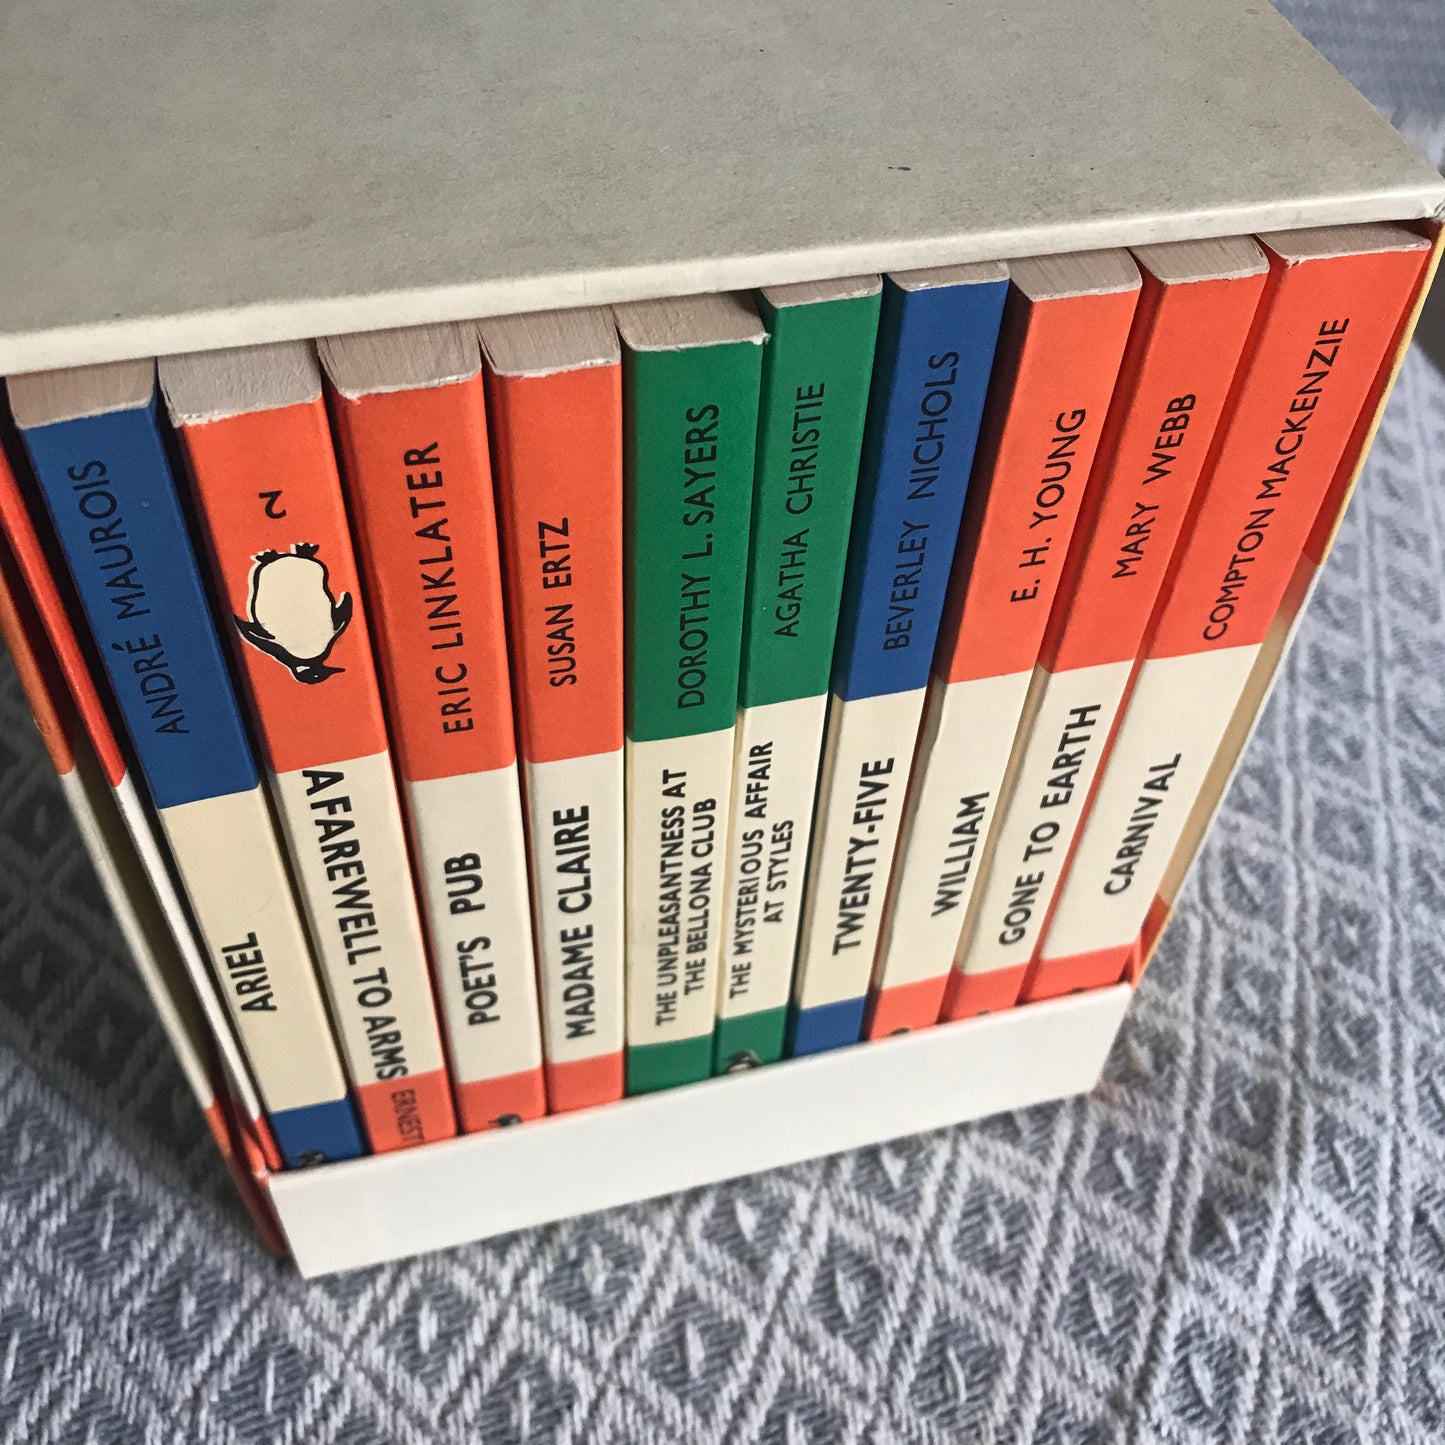 1985 Boxset zum 50-jährigen Jubiläum des Pinguins, Ausgabe von Faksimiles der ersten zehn Pinguine